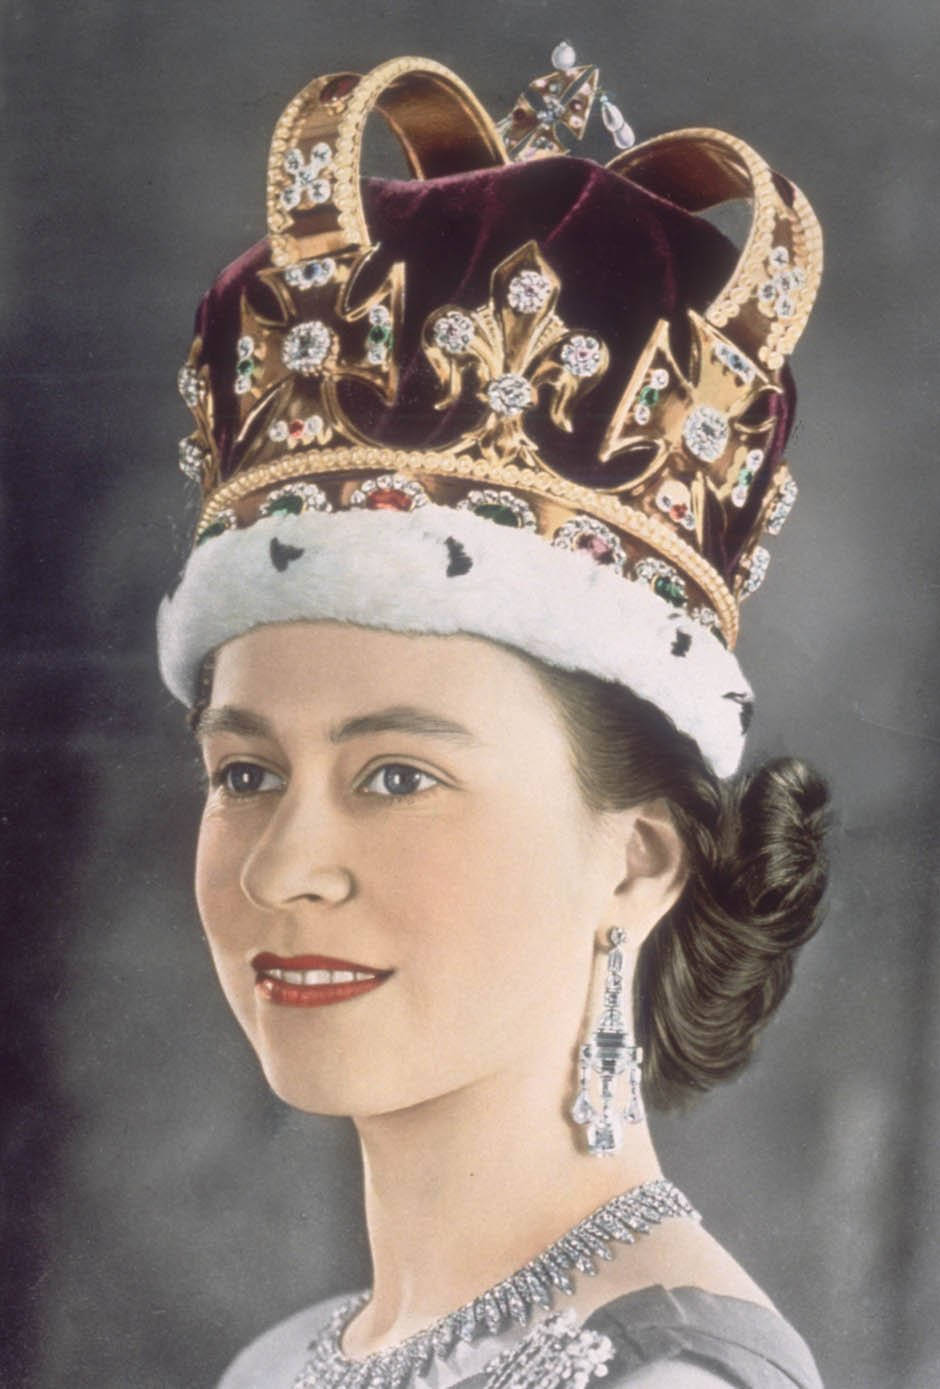 Queen Elizabeth Portrait With Crown Wallpaper